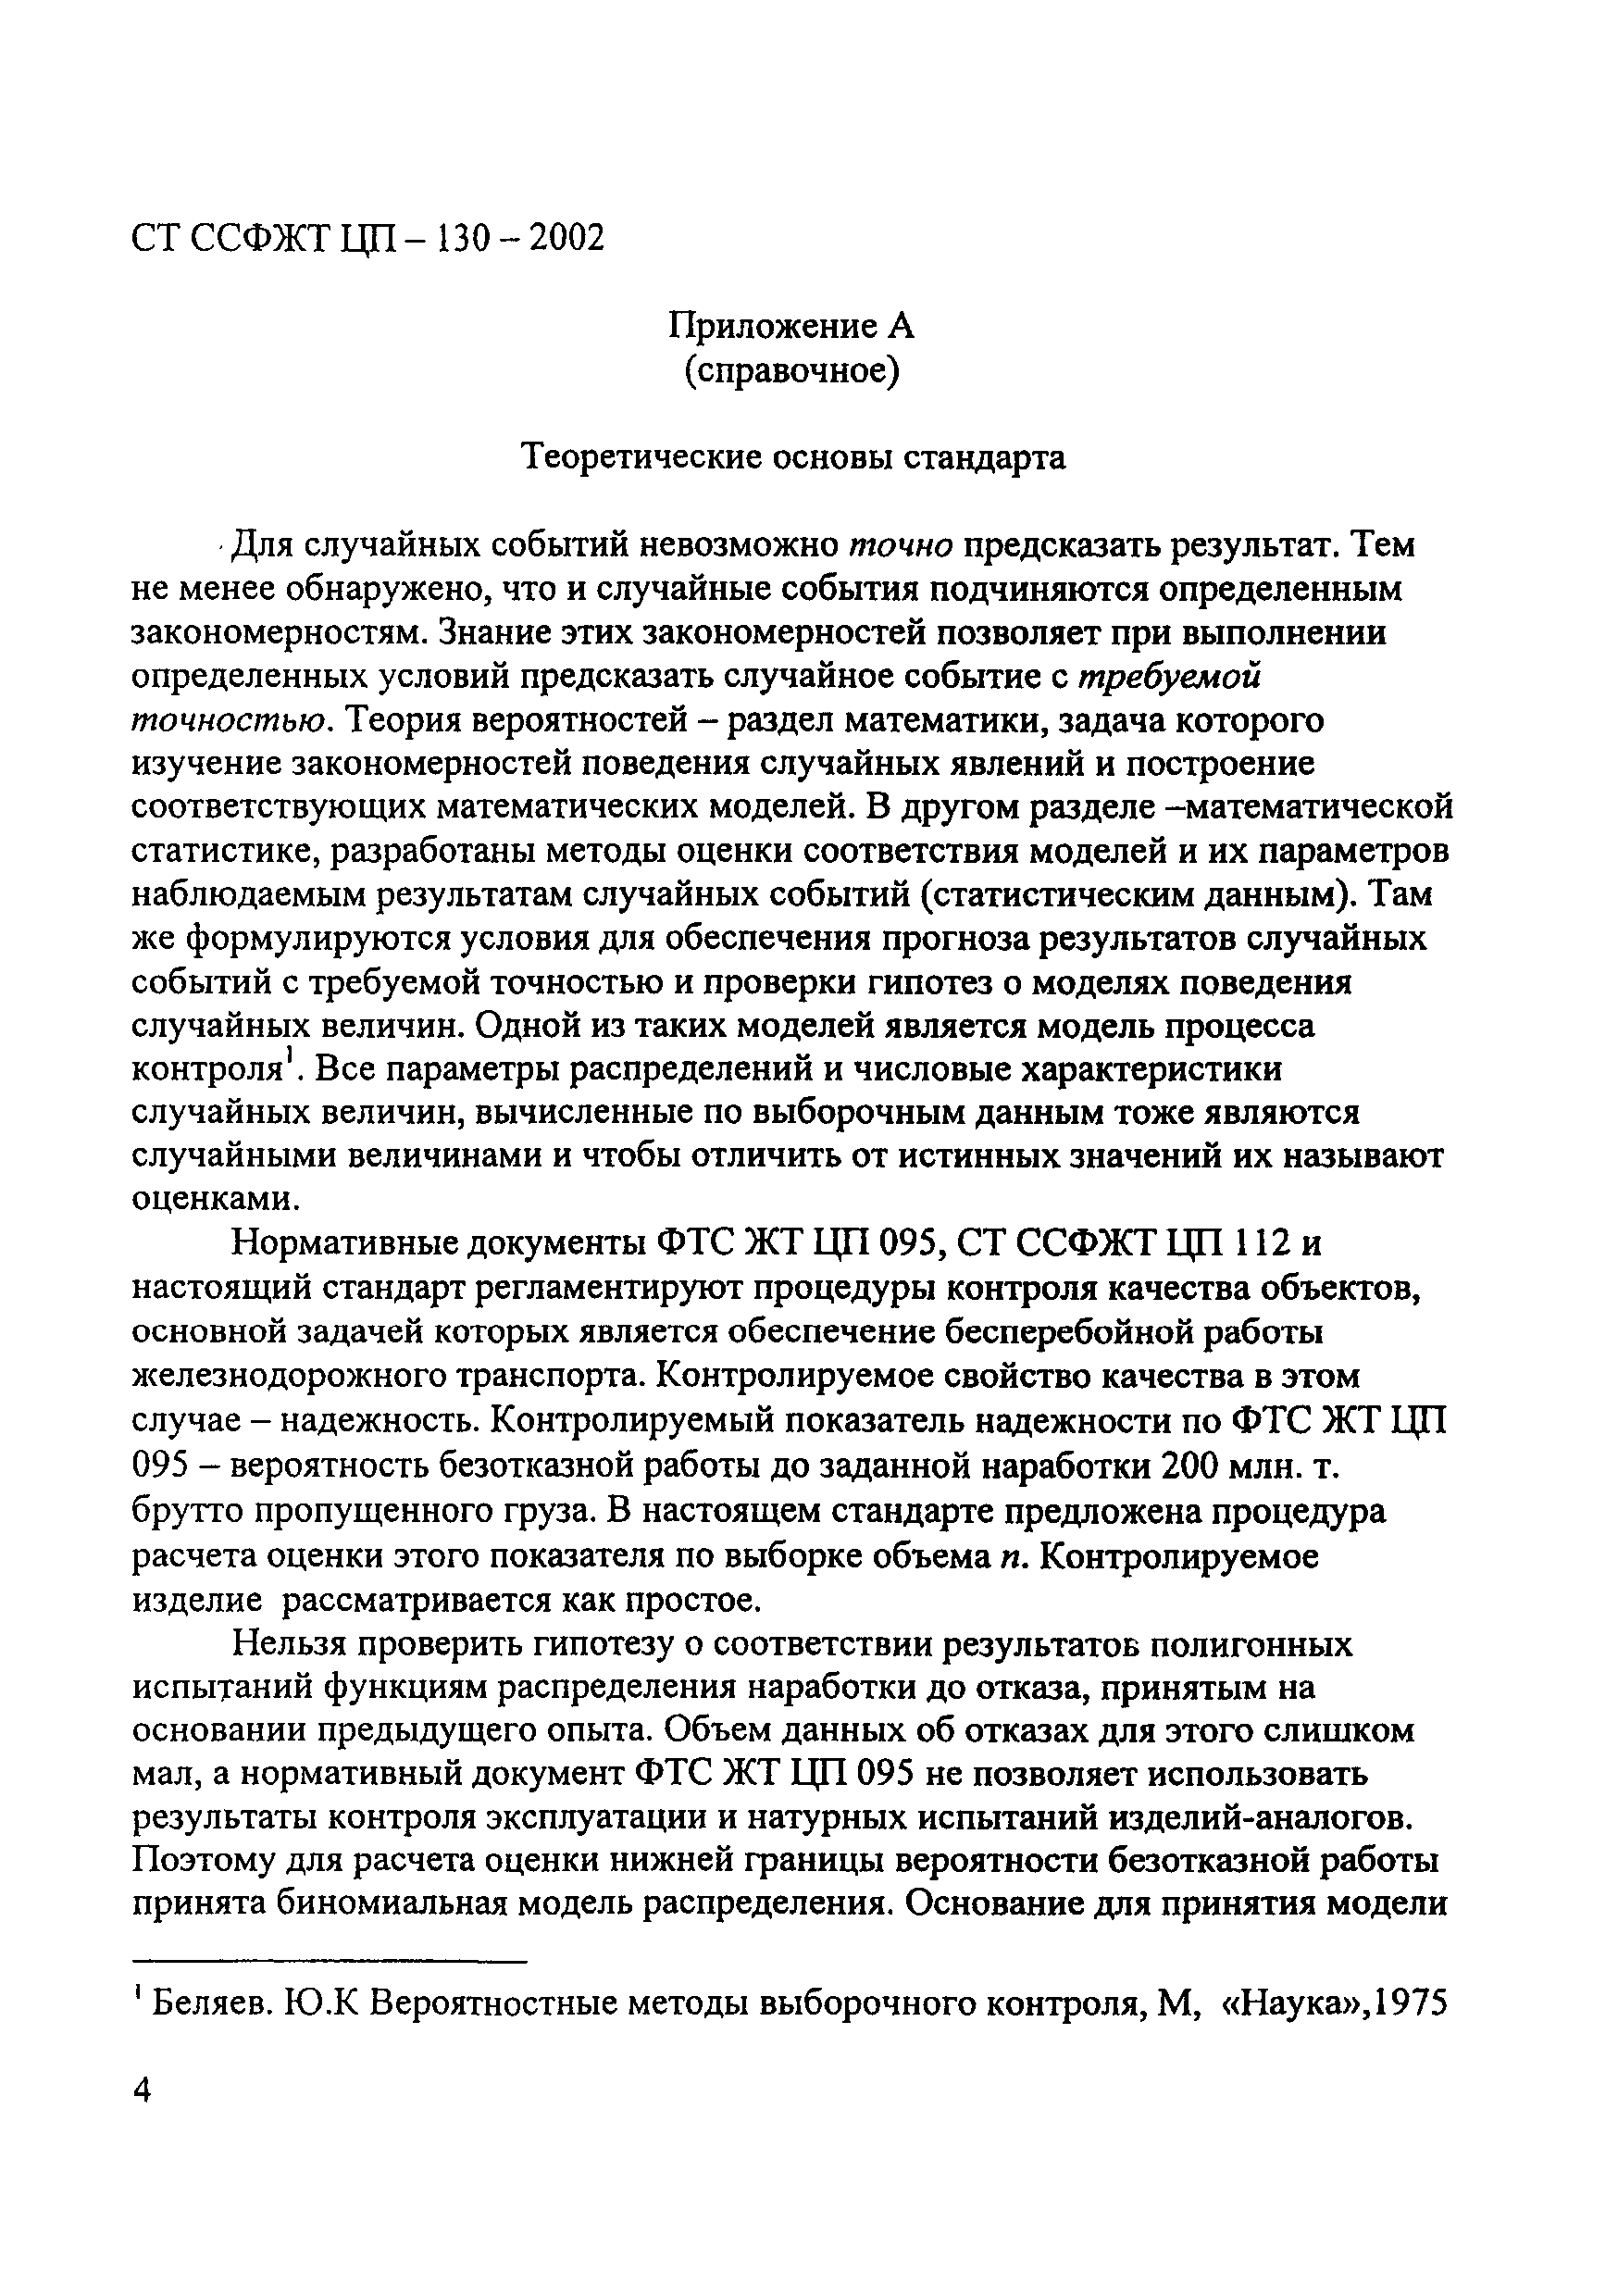 СТ ССФЖТ ЦП-130-2002